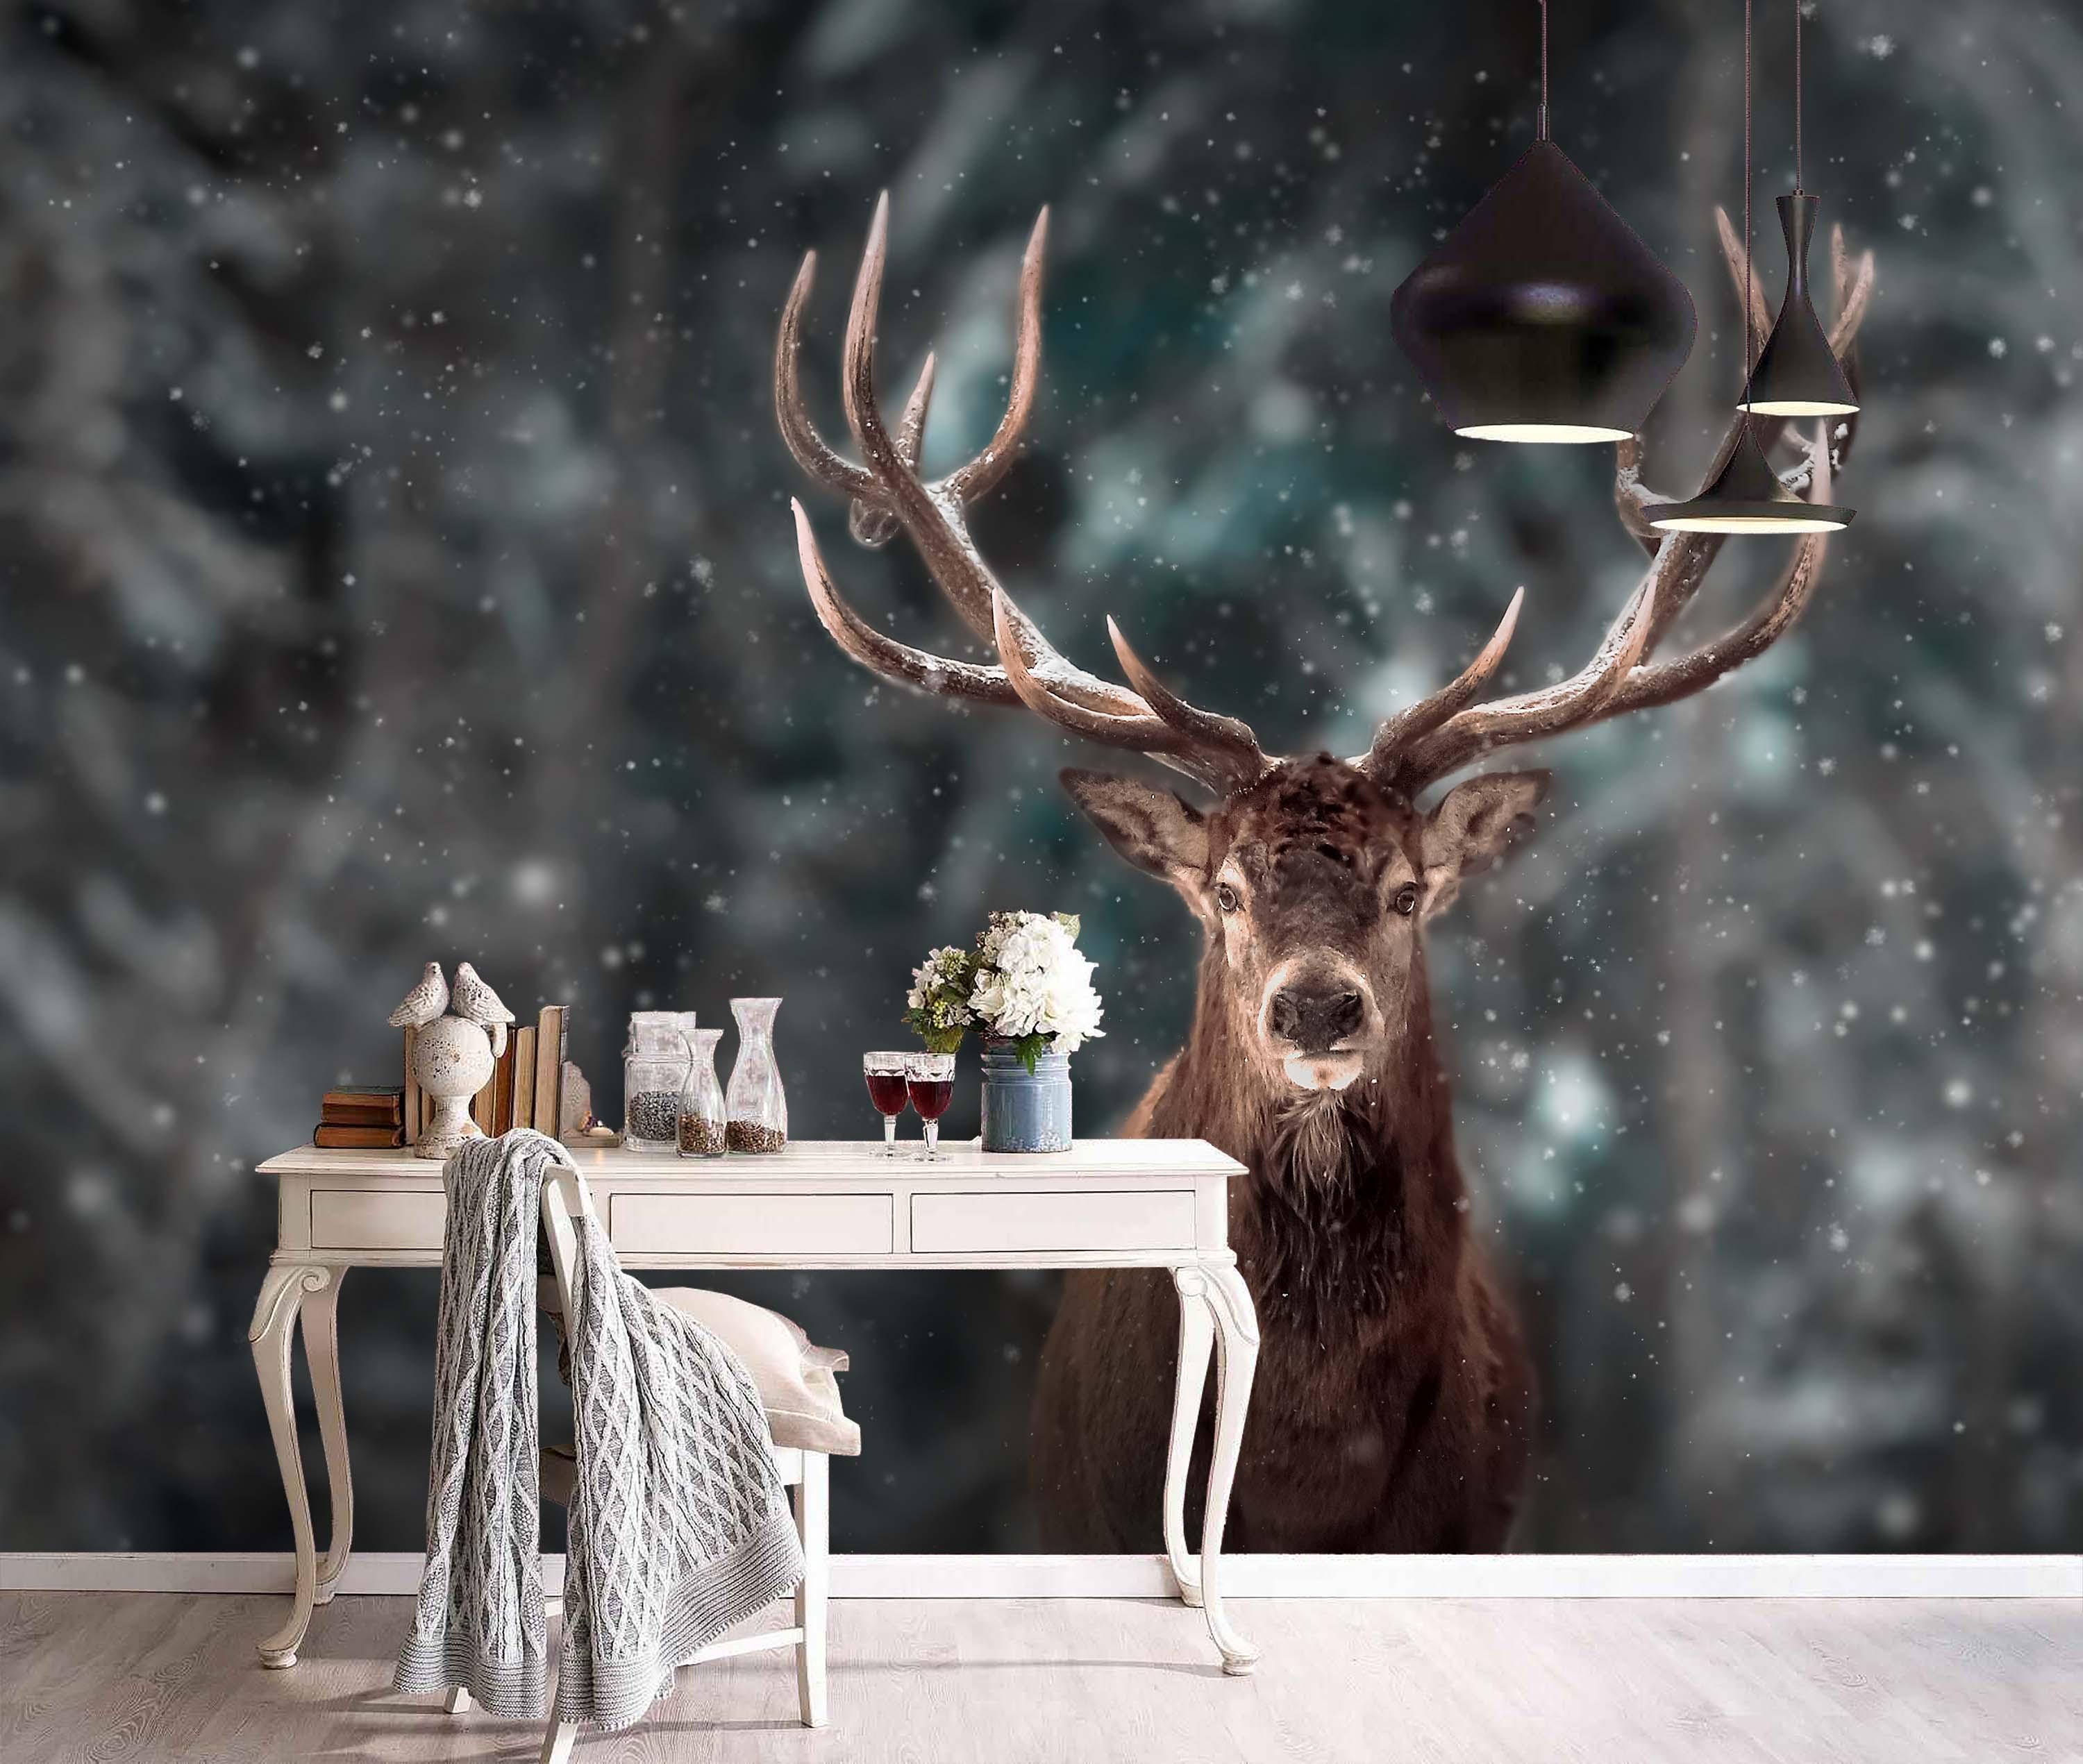 3D Snow Reindeer Wall Mural Wallpaper 120- Jess Art Decoration